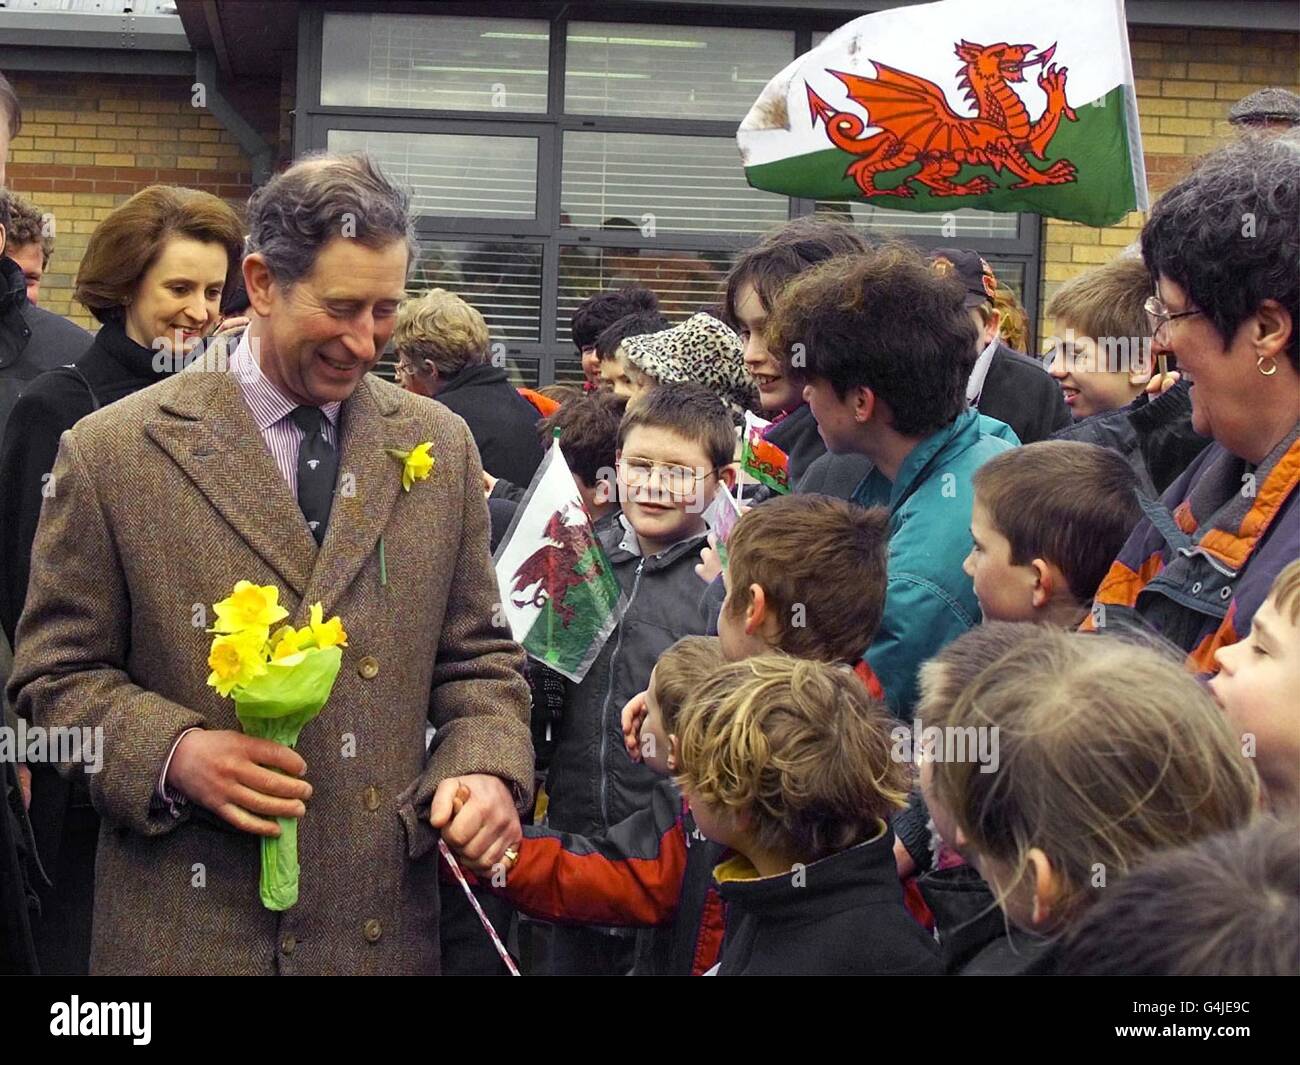 Le Prince de Galles rencontre le public lorsqu'il visite Brickfield Pond aujourd'hui (jeudi) à Rhyl, au pays de Galles. Photo par Reuter WPA ROTA. Banque D'Images